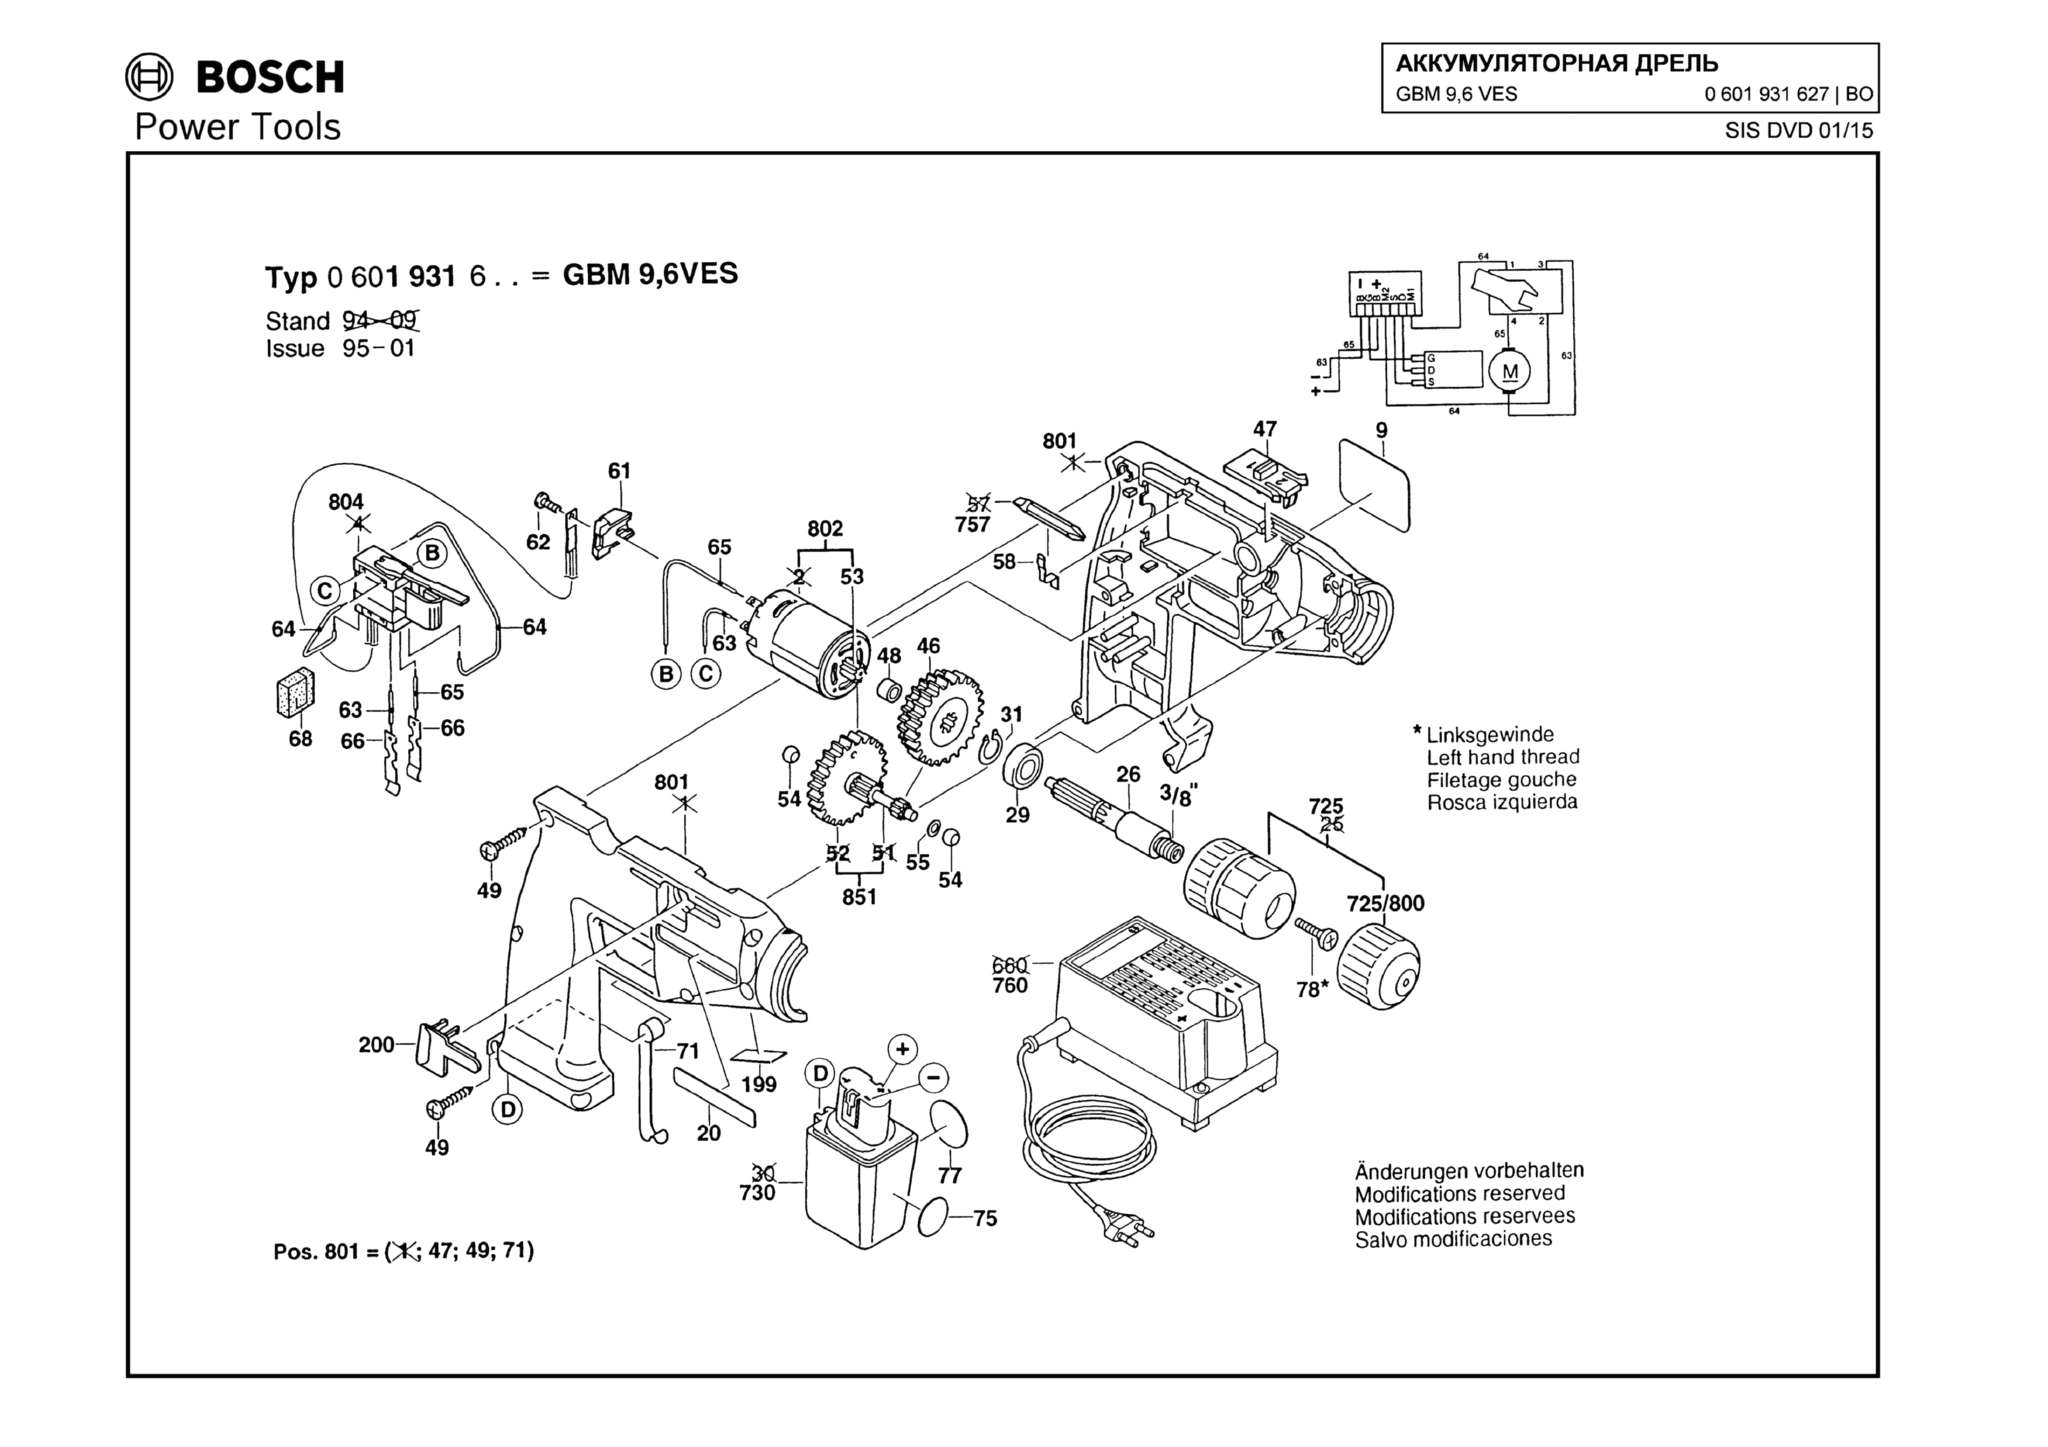 Запчасти, схема и деталировка Bosch GBM 9,6 VES (ТИП 0601931627)